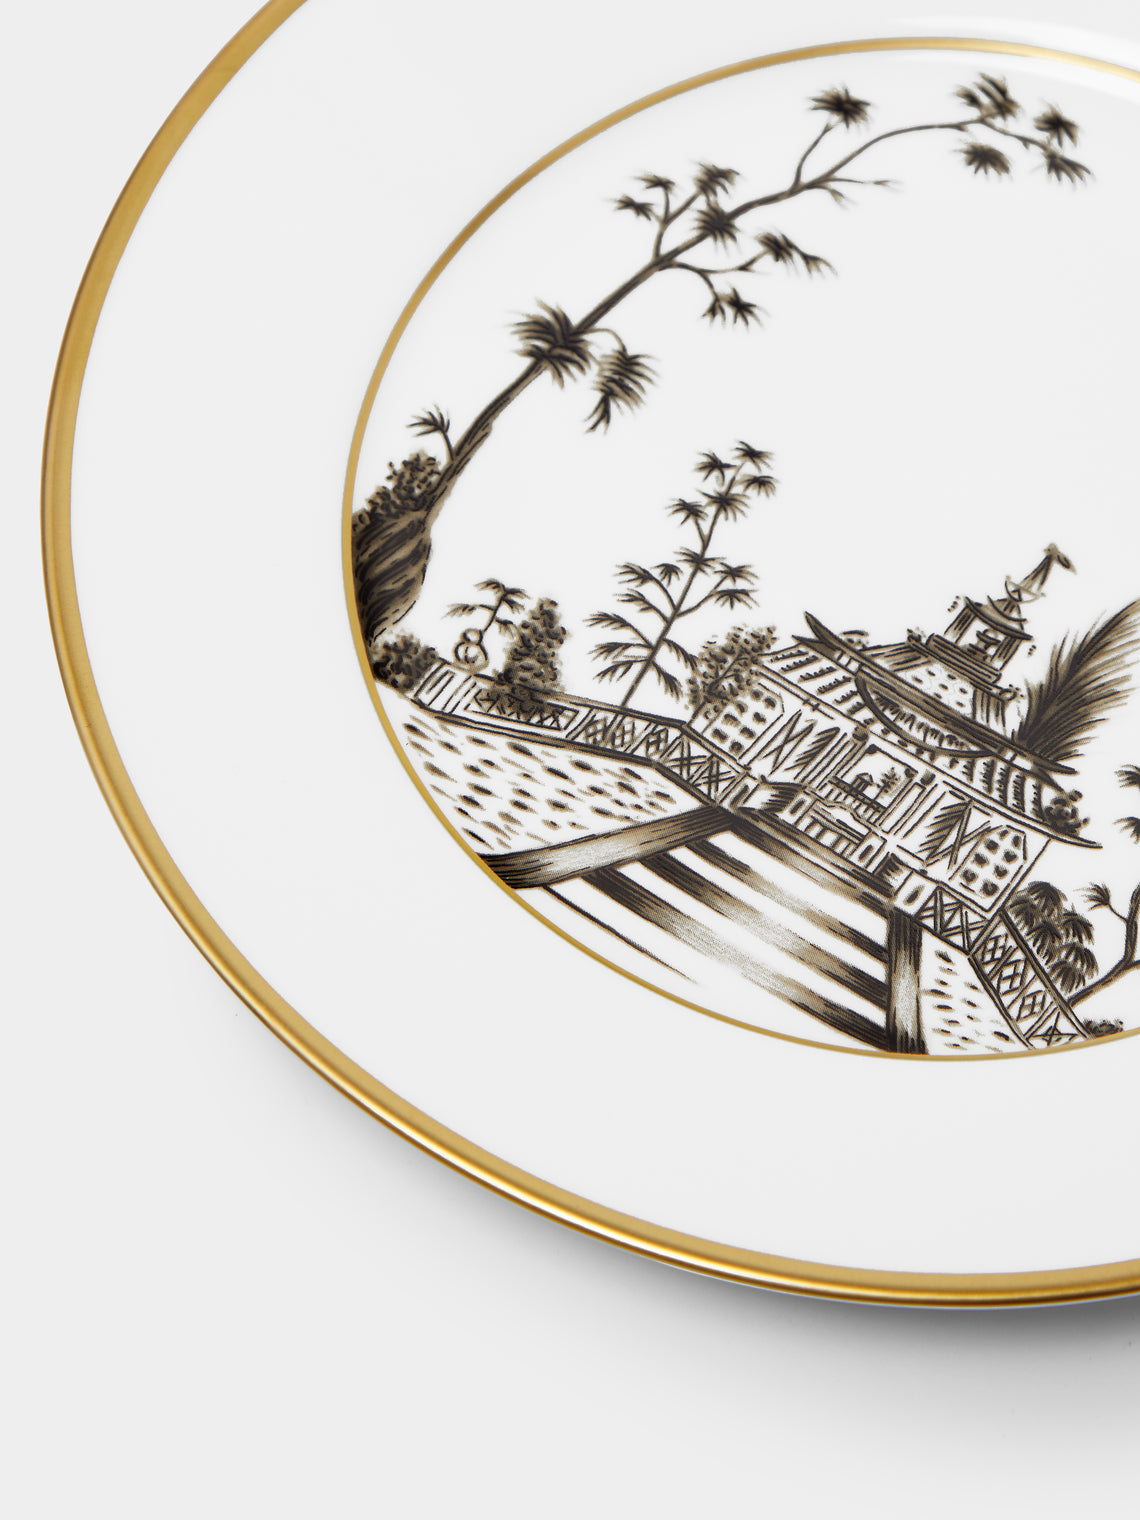 Pinto Paris - Vieux Kyoto Porcelain Dessert Plate -  - ABASK